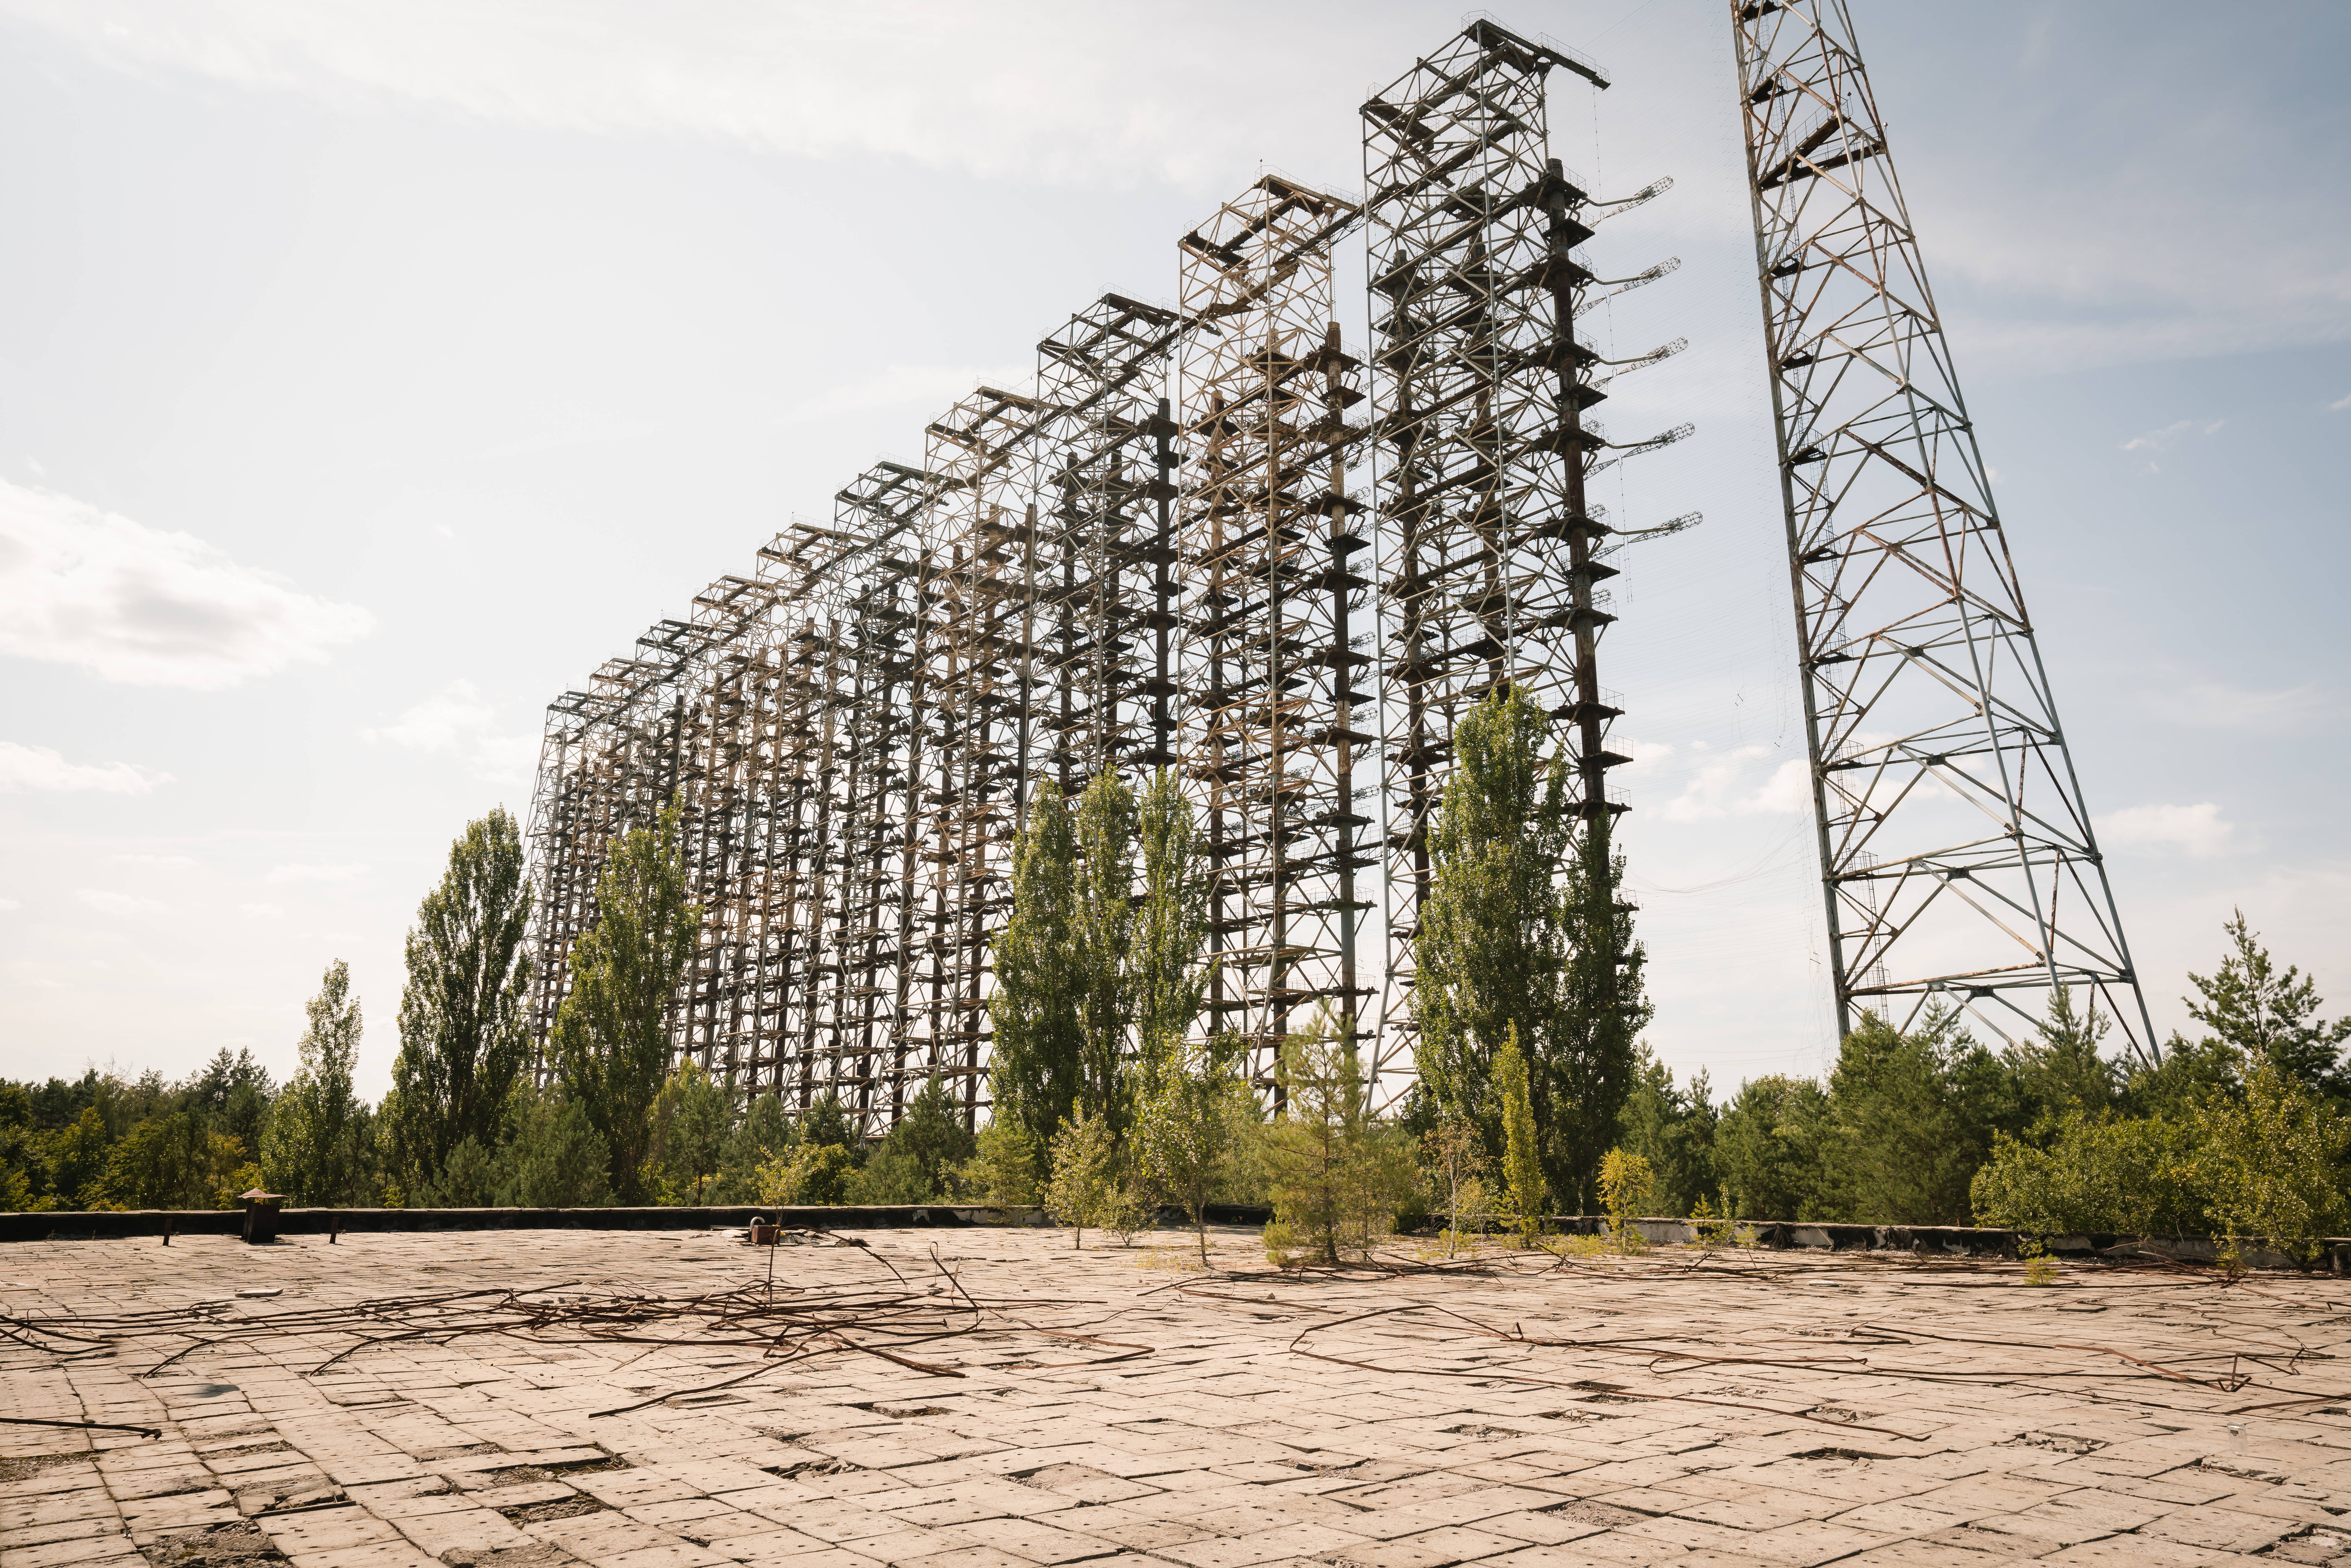 Antena radarowa Duga (Duga-1) - dawna sowiecka tajna technologia wykrywania rakiet - Czarnobylska Strefa Wykluczenia, Ukraina.